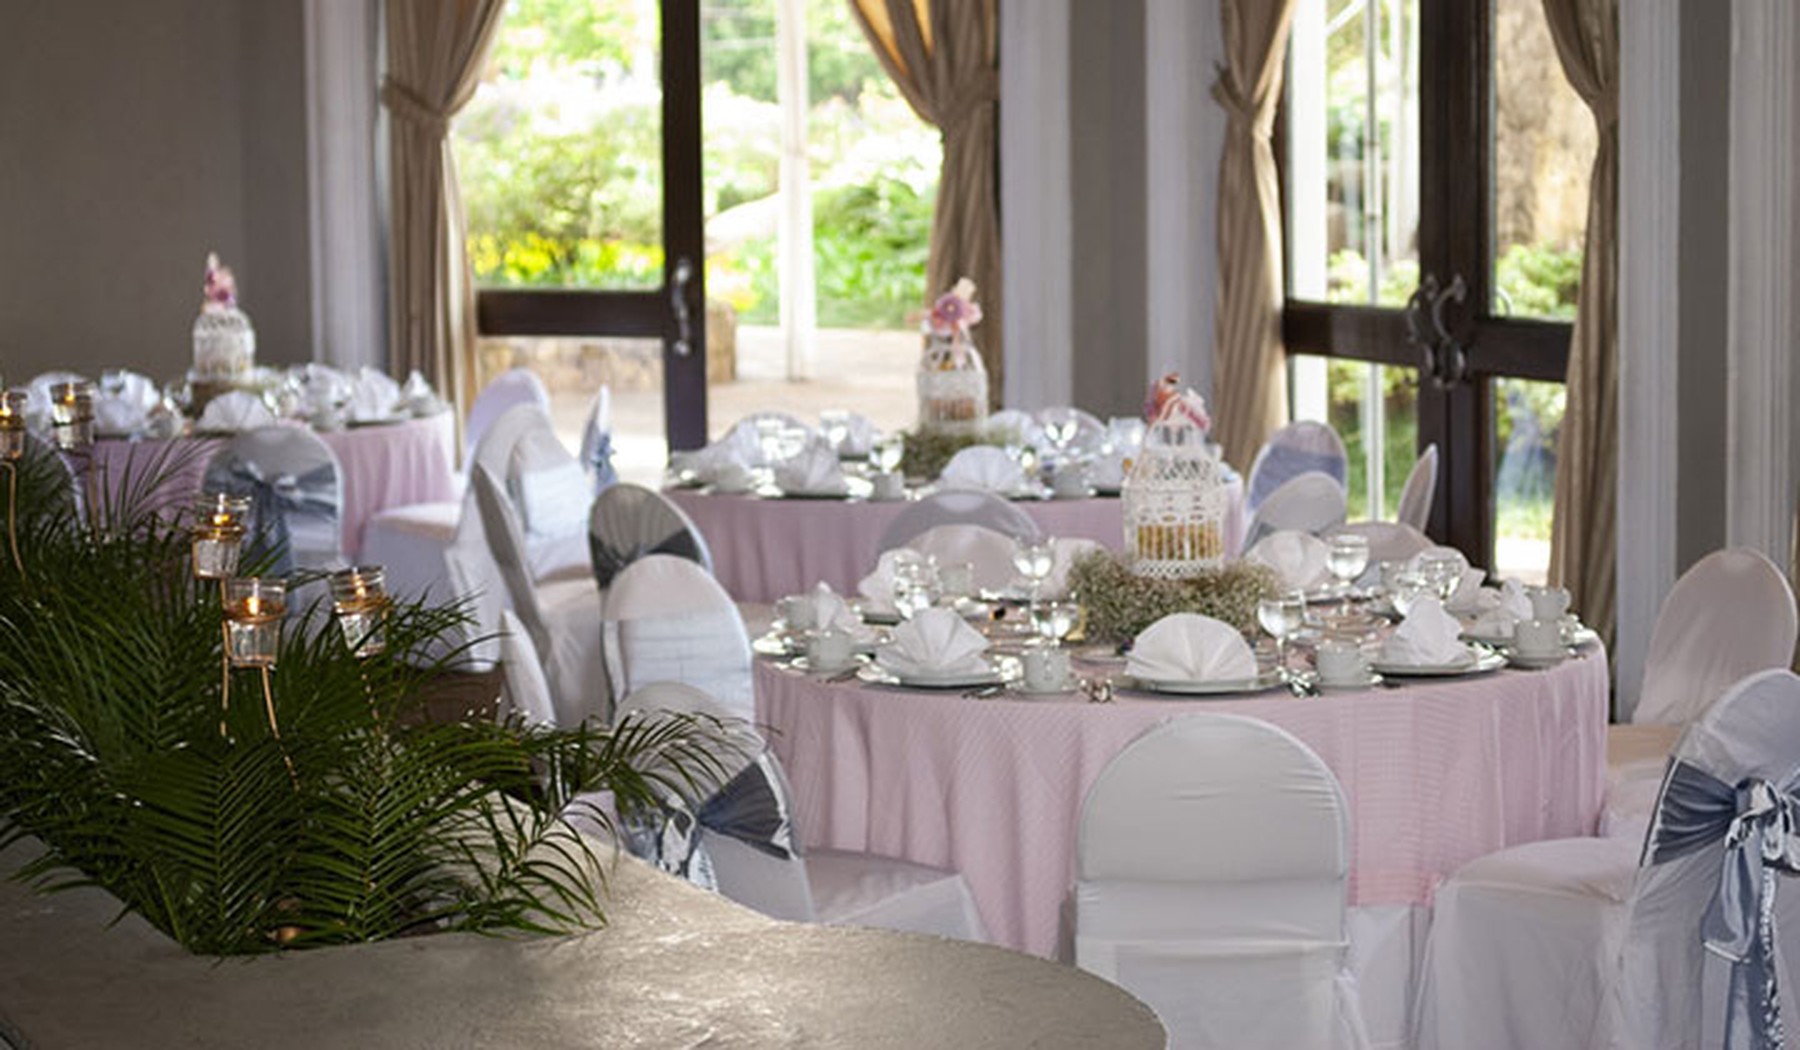 Tres mesas redondas decoradas de comunión con manteles rosas claritos. En primer plano hay una planta de hojas verdes y al fondo dos puertas de cristal.